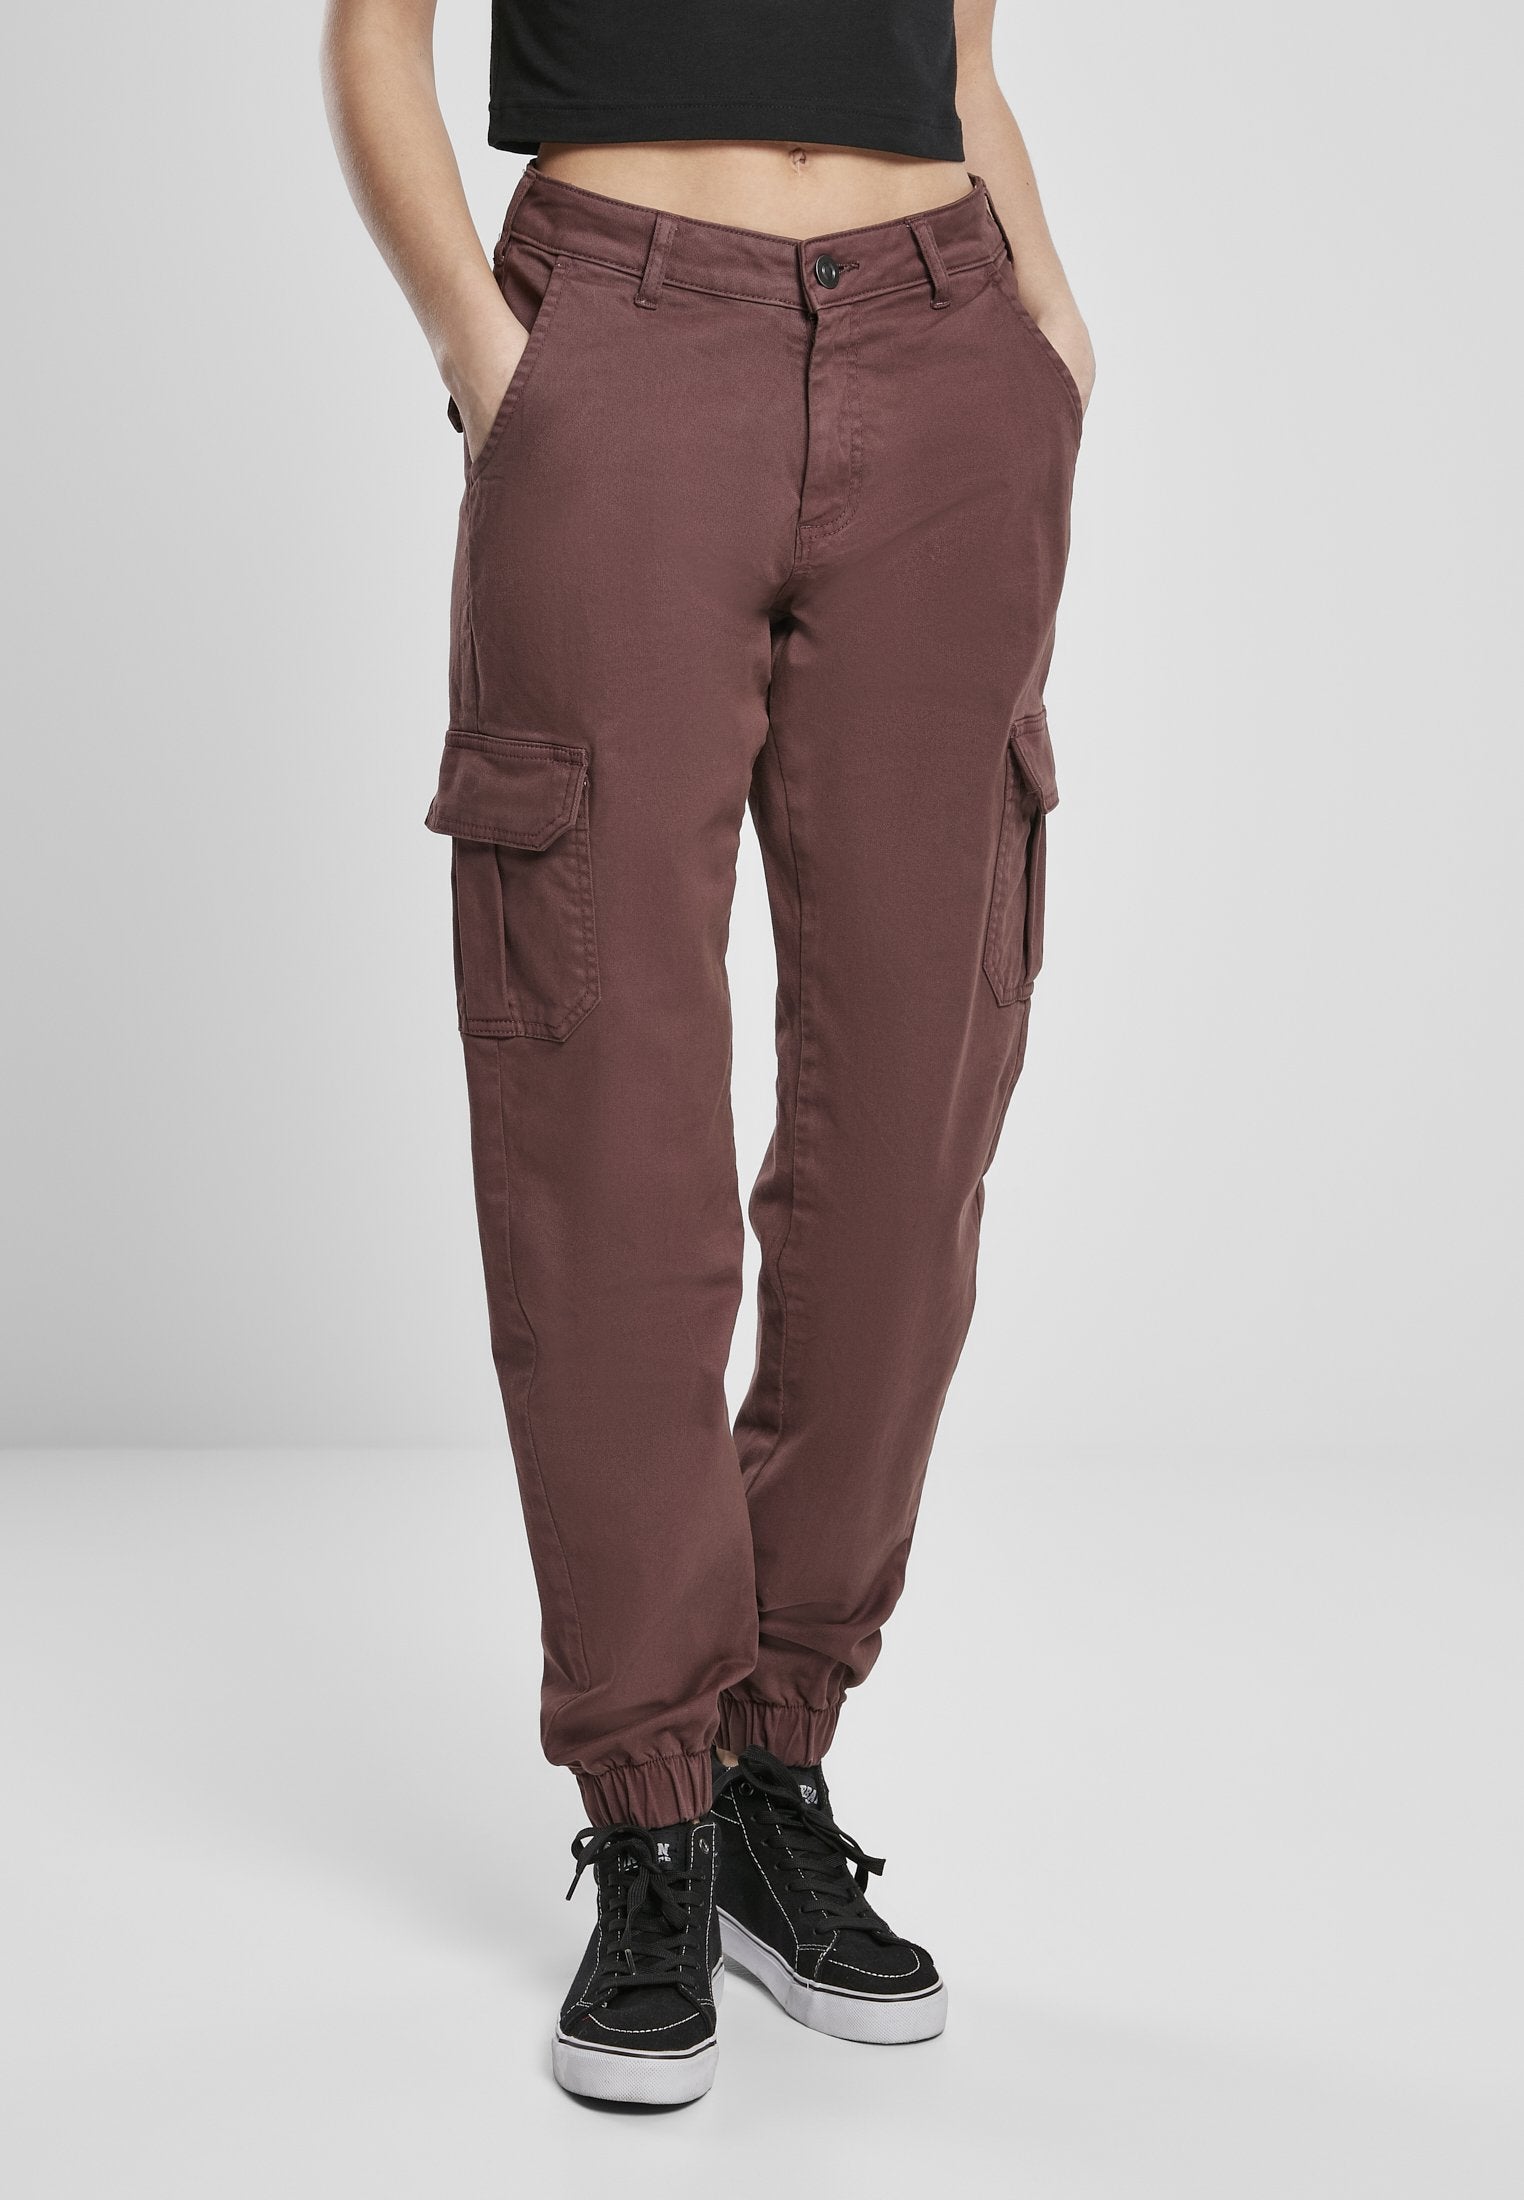 Urban Classics Damen High Waist Cargo Pants in Cherry-Street-& Sportswear Aurich - Hosen